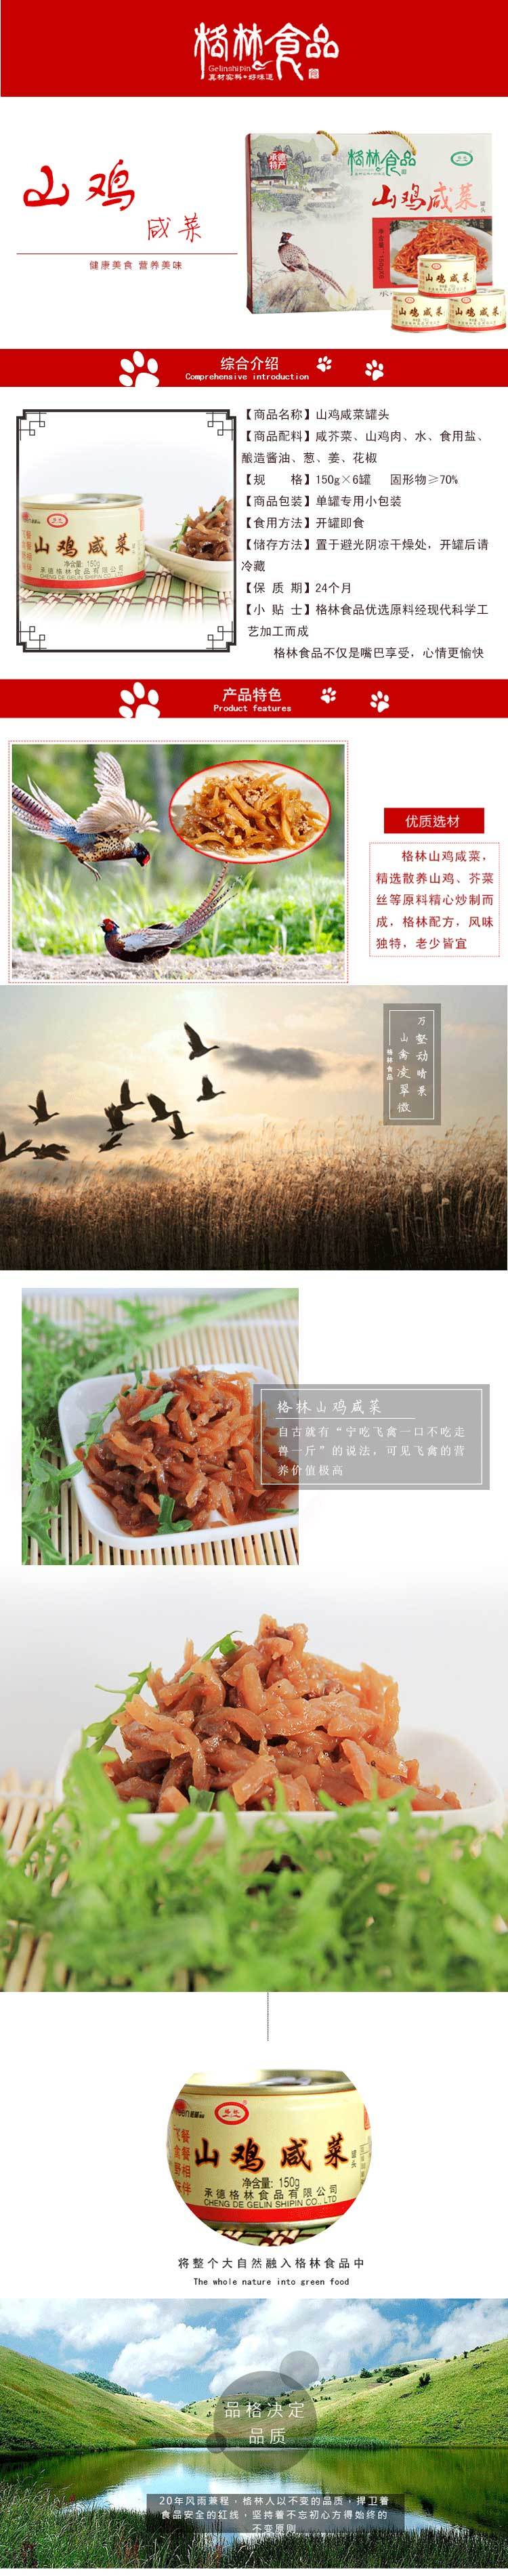 承德隆化特产 格林食品 包邮 山鸡咸菜 礼盒 150gx6  0023